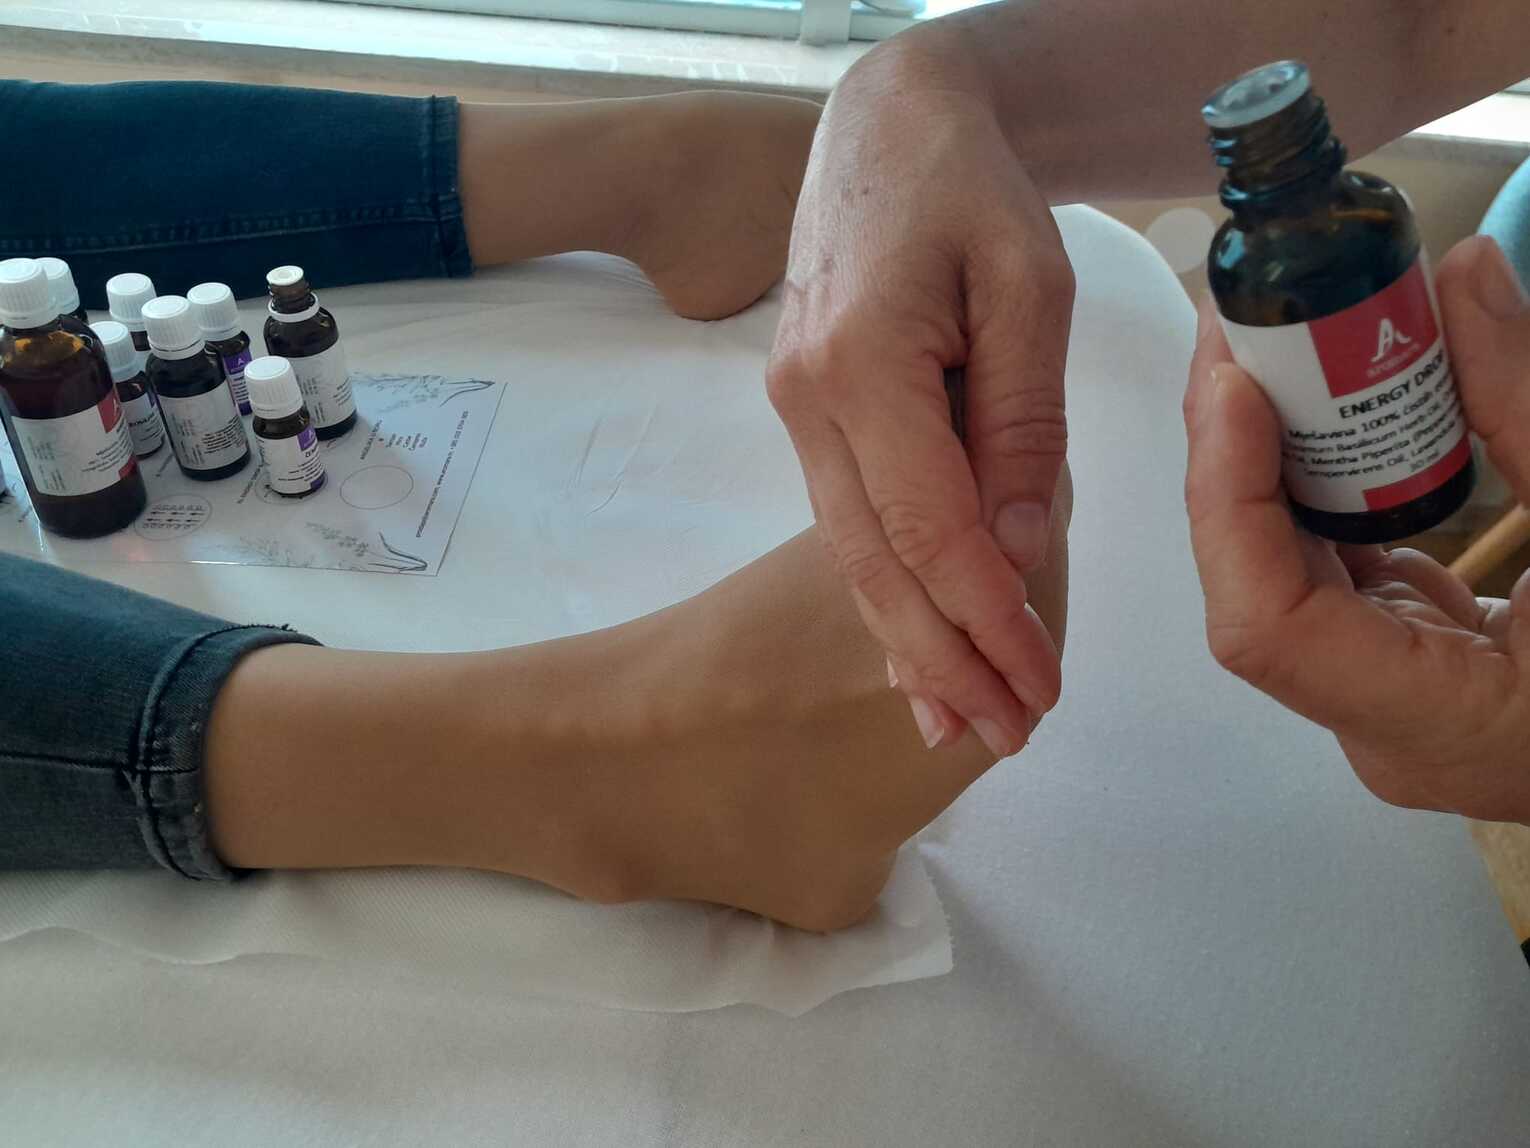 masaža desnog stopala i raindrop witaflex esencijalno ulje u ruci masažera